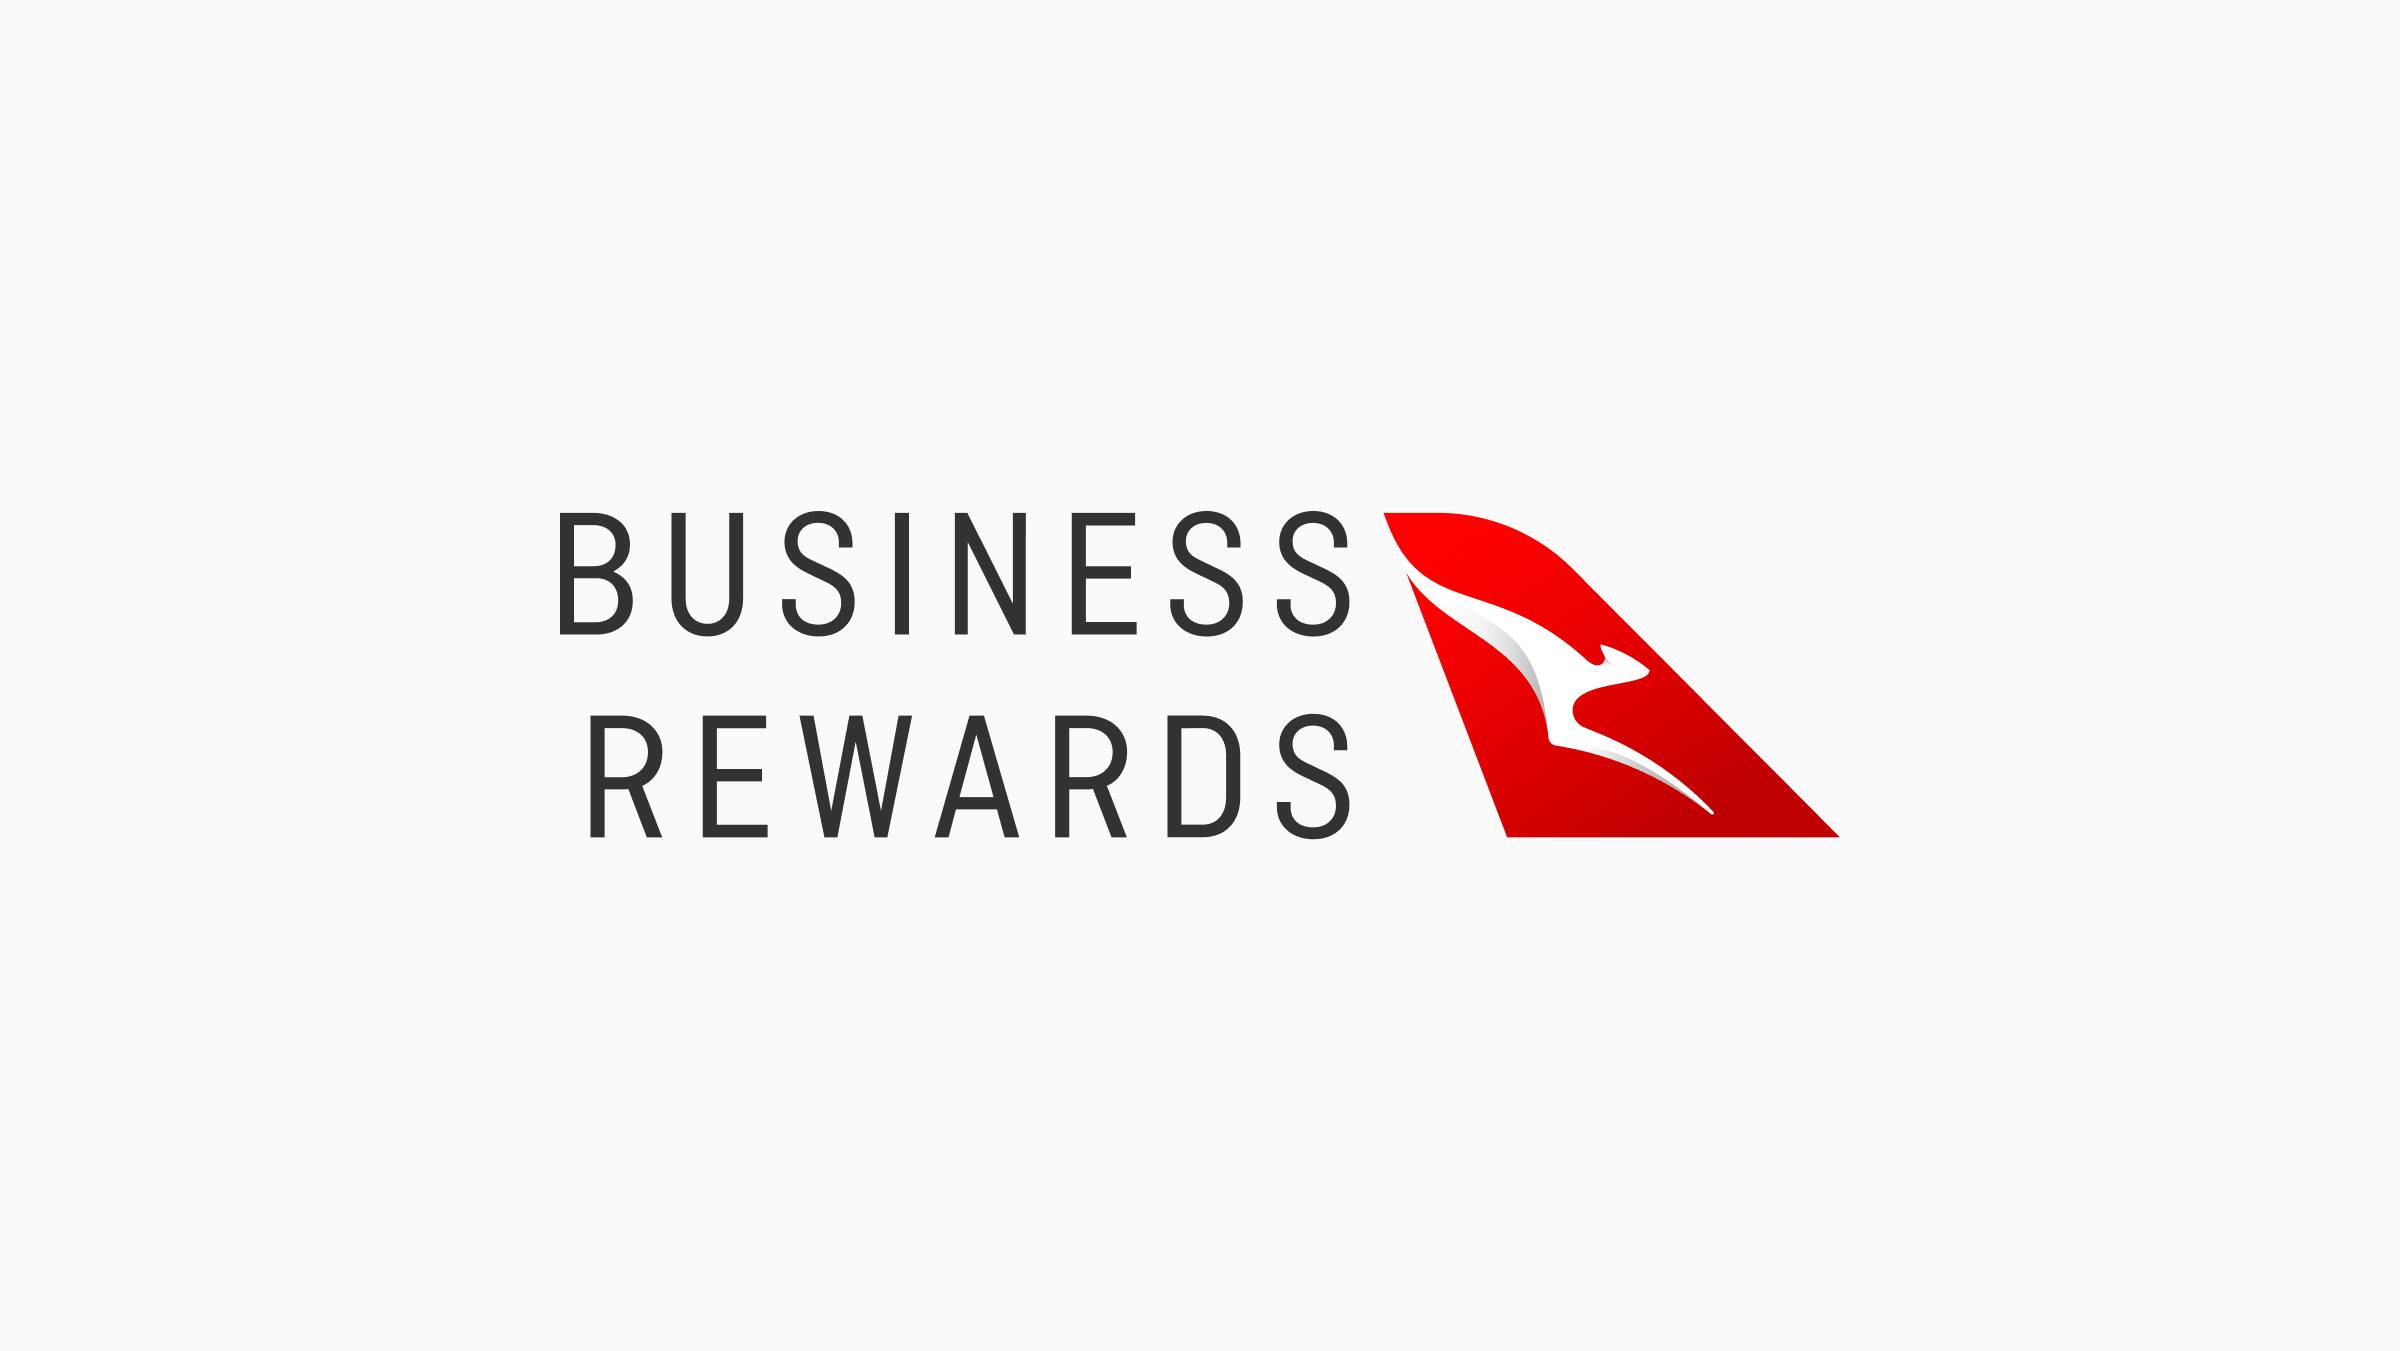 The Qantas Business Rewards logo